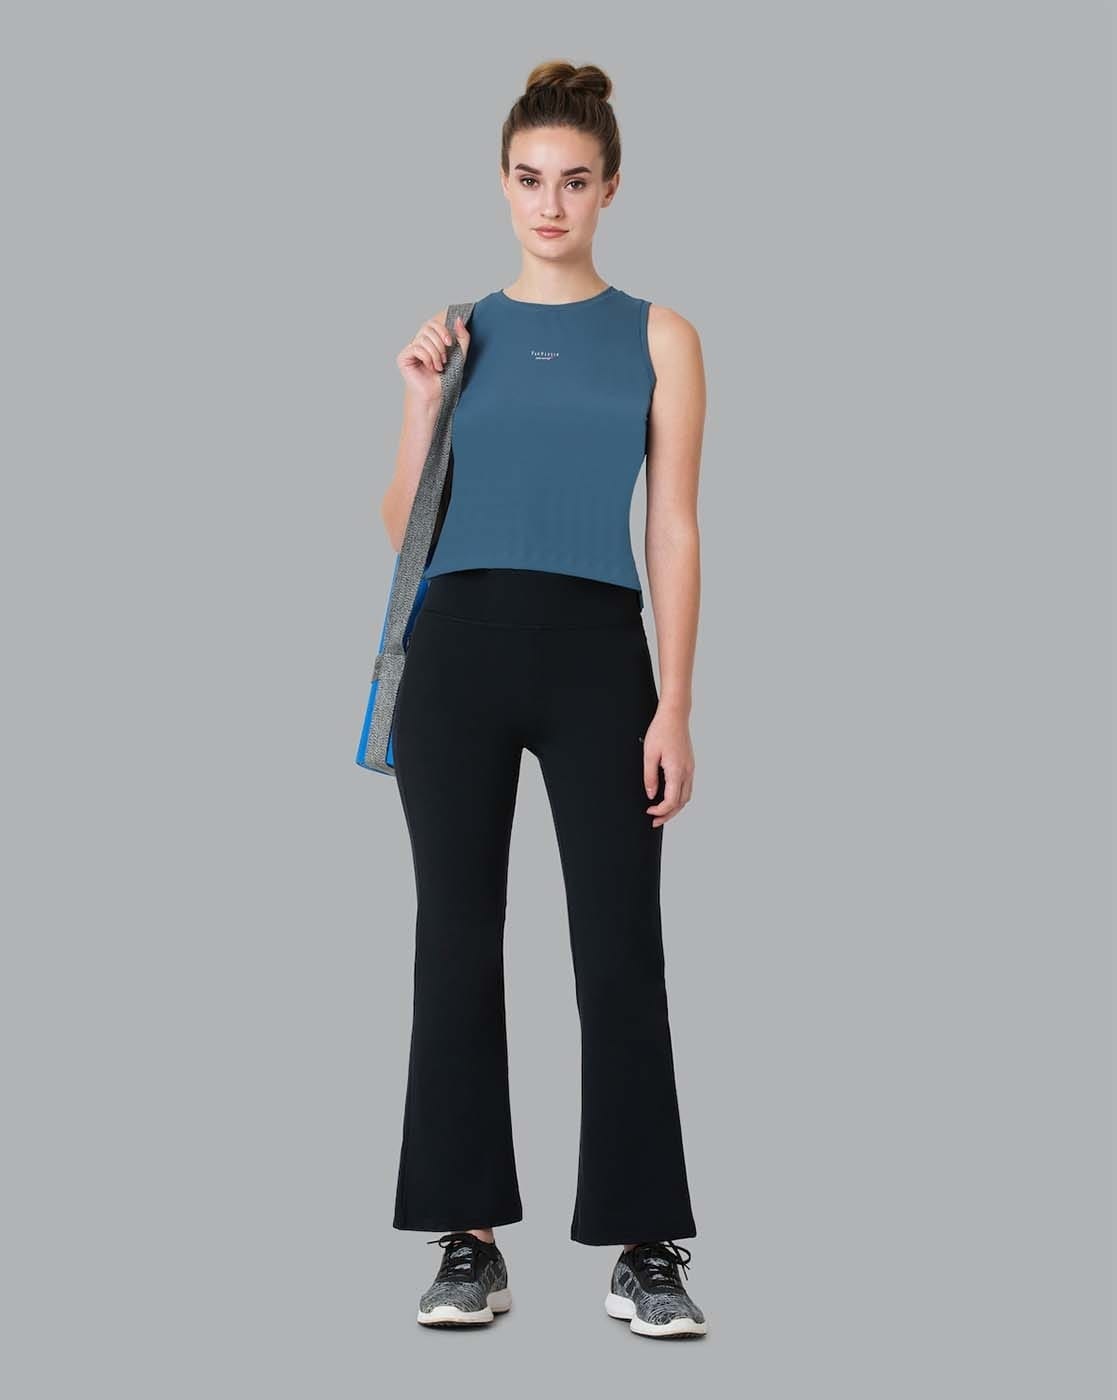 Buy Van Heusen Women Printed Modal Stretch Lounge Pants at Amazonin